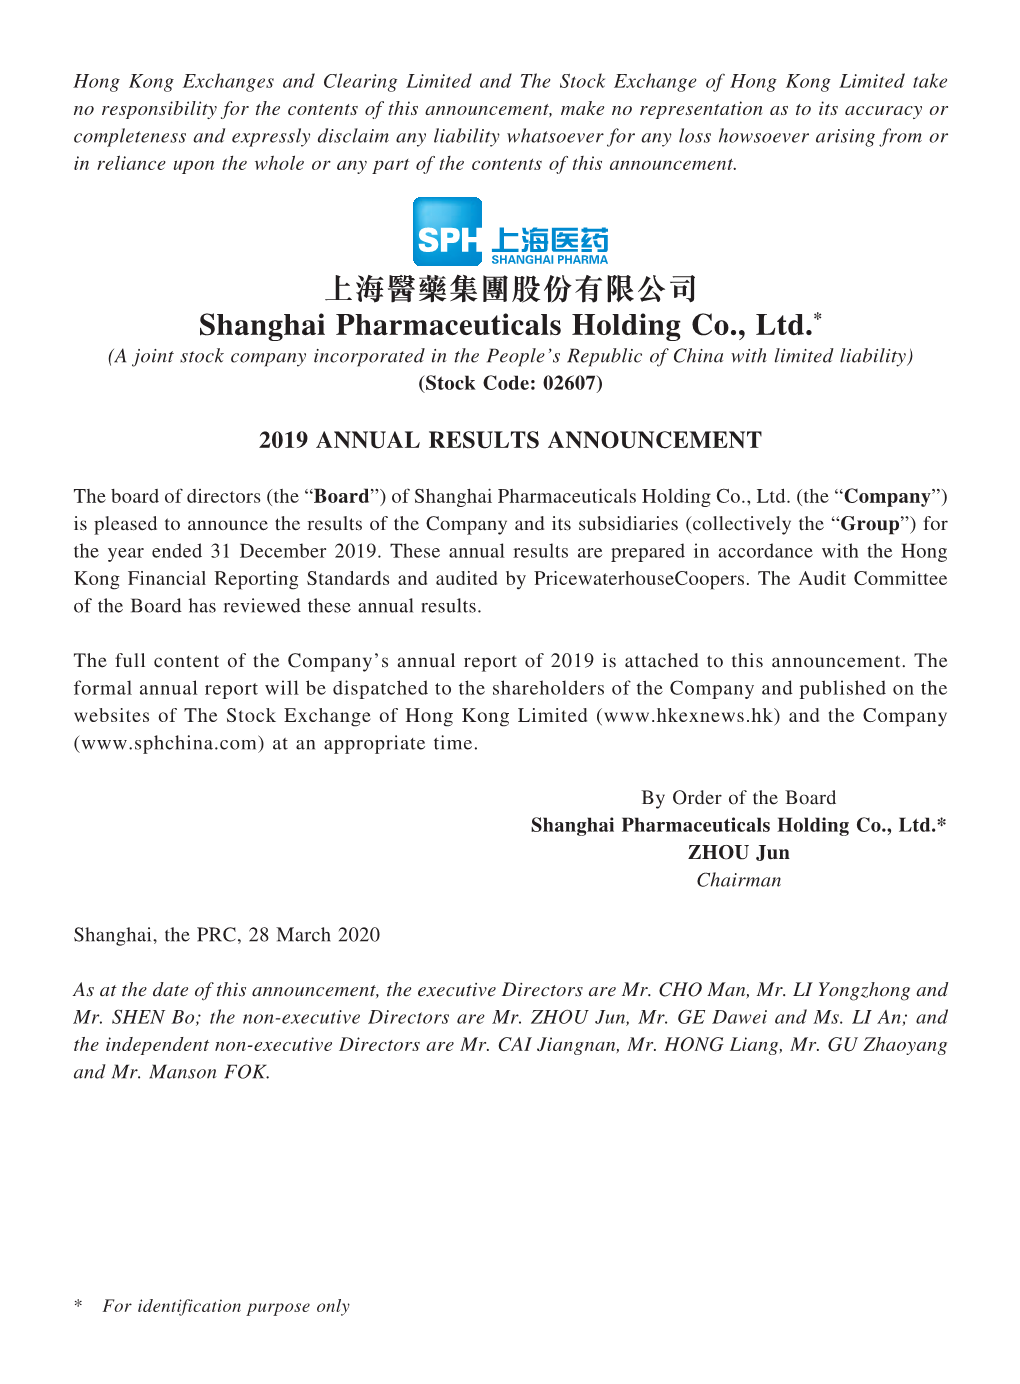 上海醫藥集團股份有限公司 Shanghai Pharmaceuticals Holding Co., Ltd.*